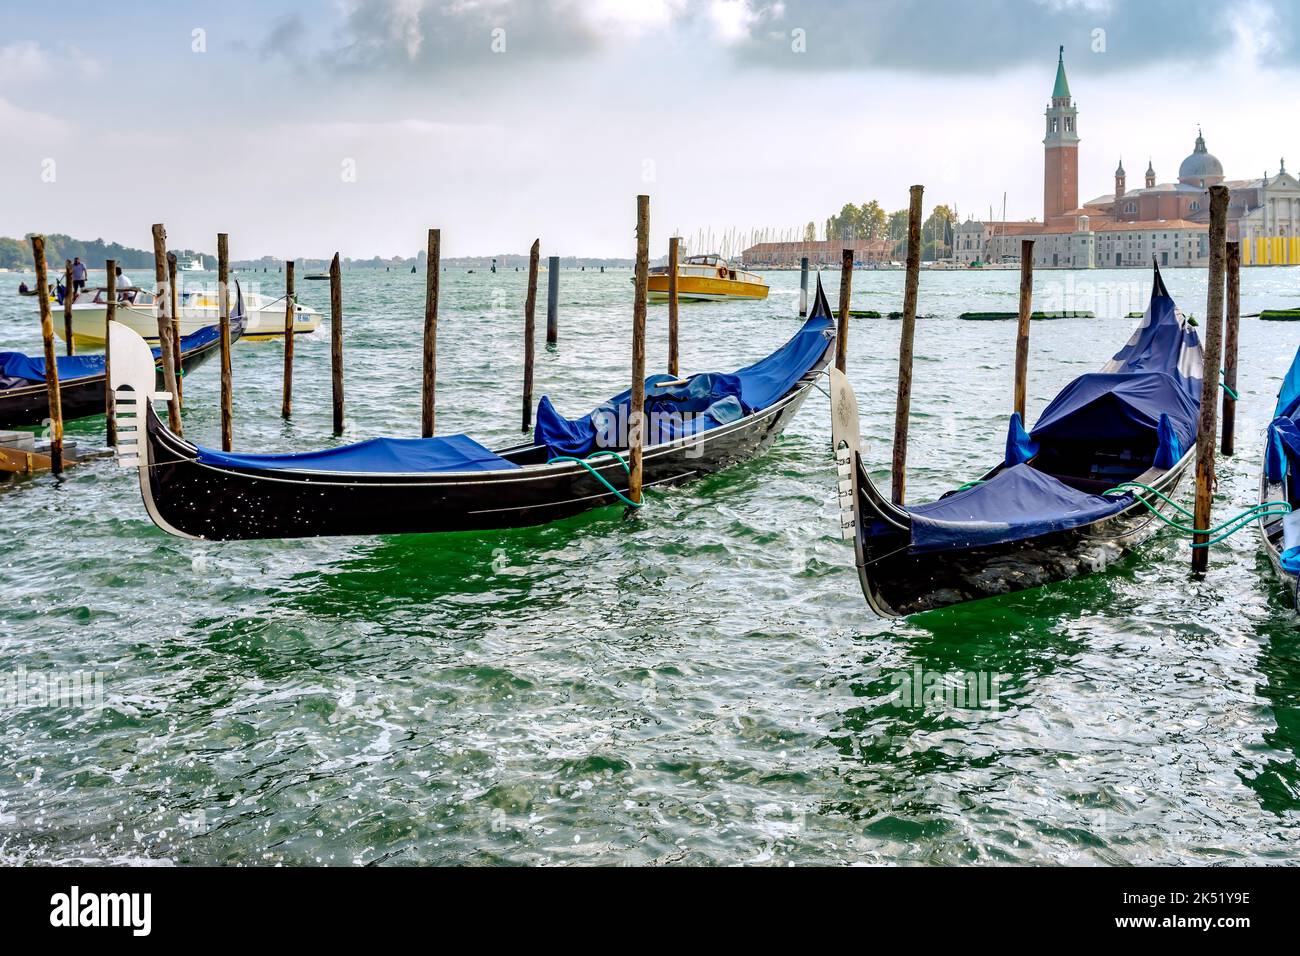 VENISE, ITALIE - OCTOBRE 12 : gondoles amarrées à l'entrée du Grand Canal de Venise sur 12 octobre 2014. Deux personnes non identifiées Banque D'Images